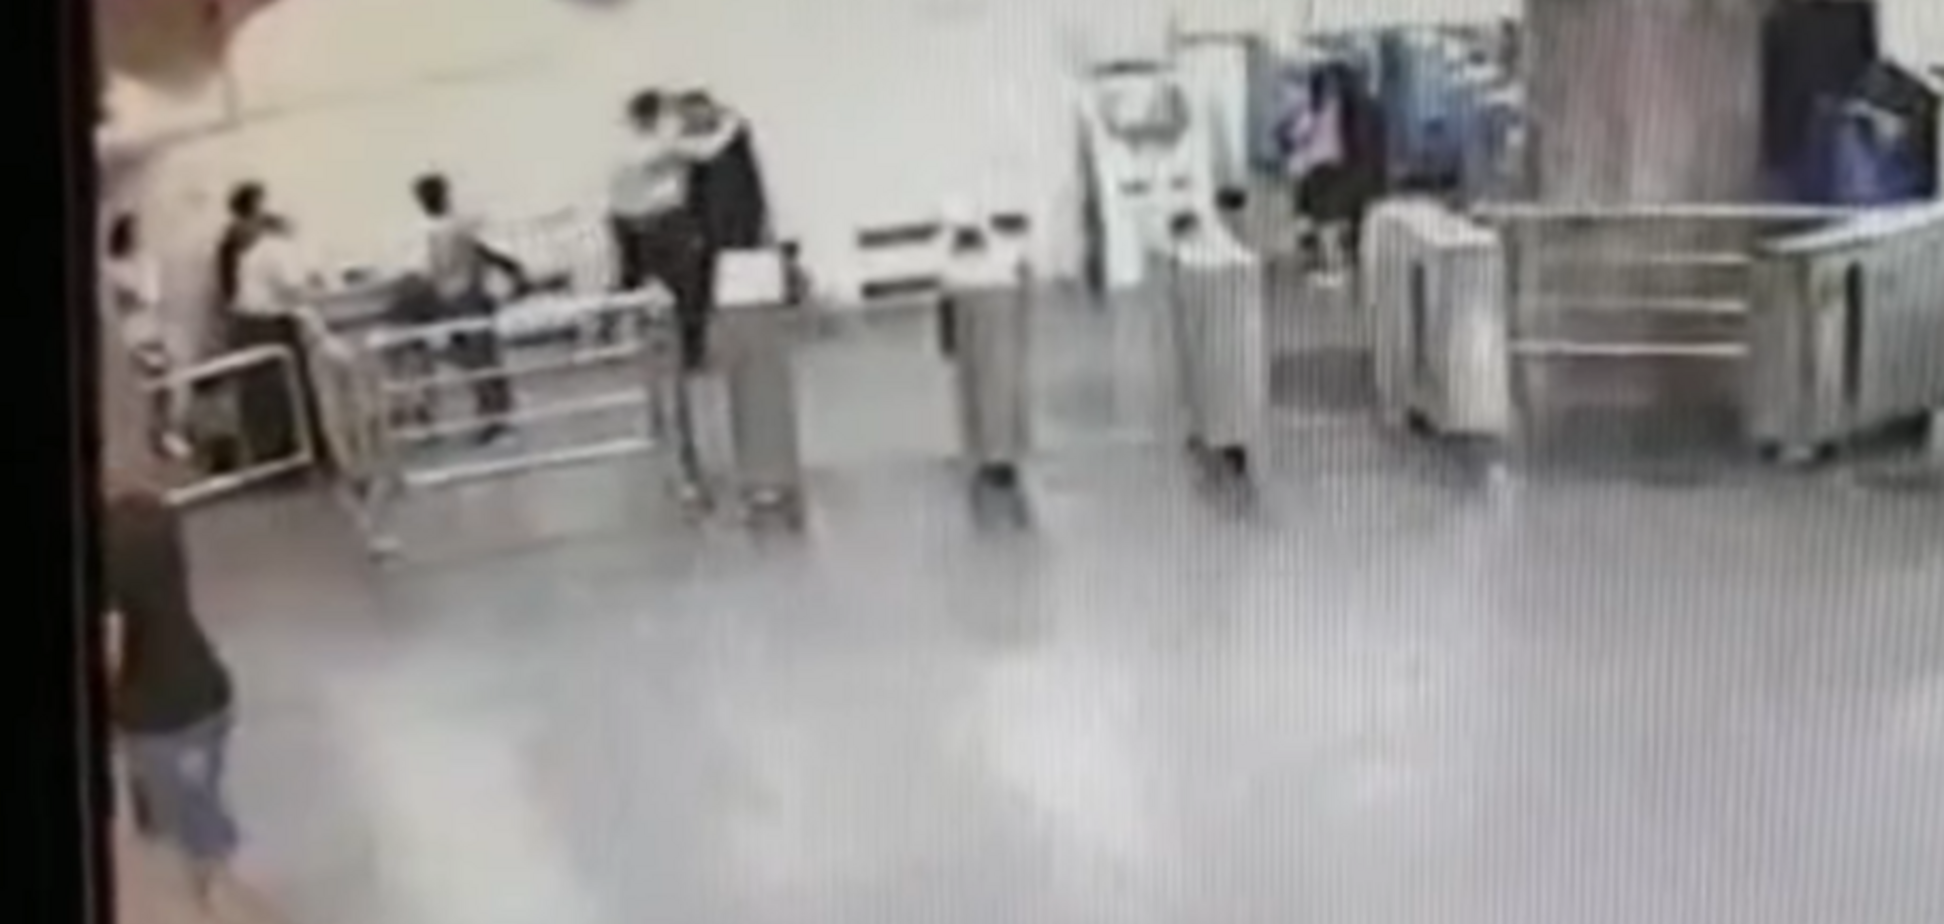 У метро Харкова неадекват ножем поранив поліцейського: зухвалий злочин потрапив на відео